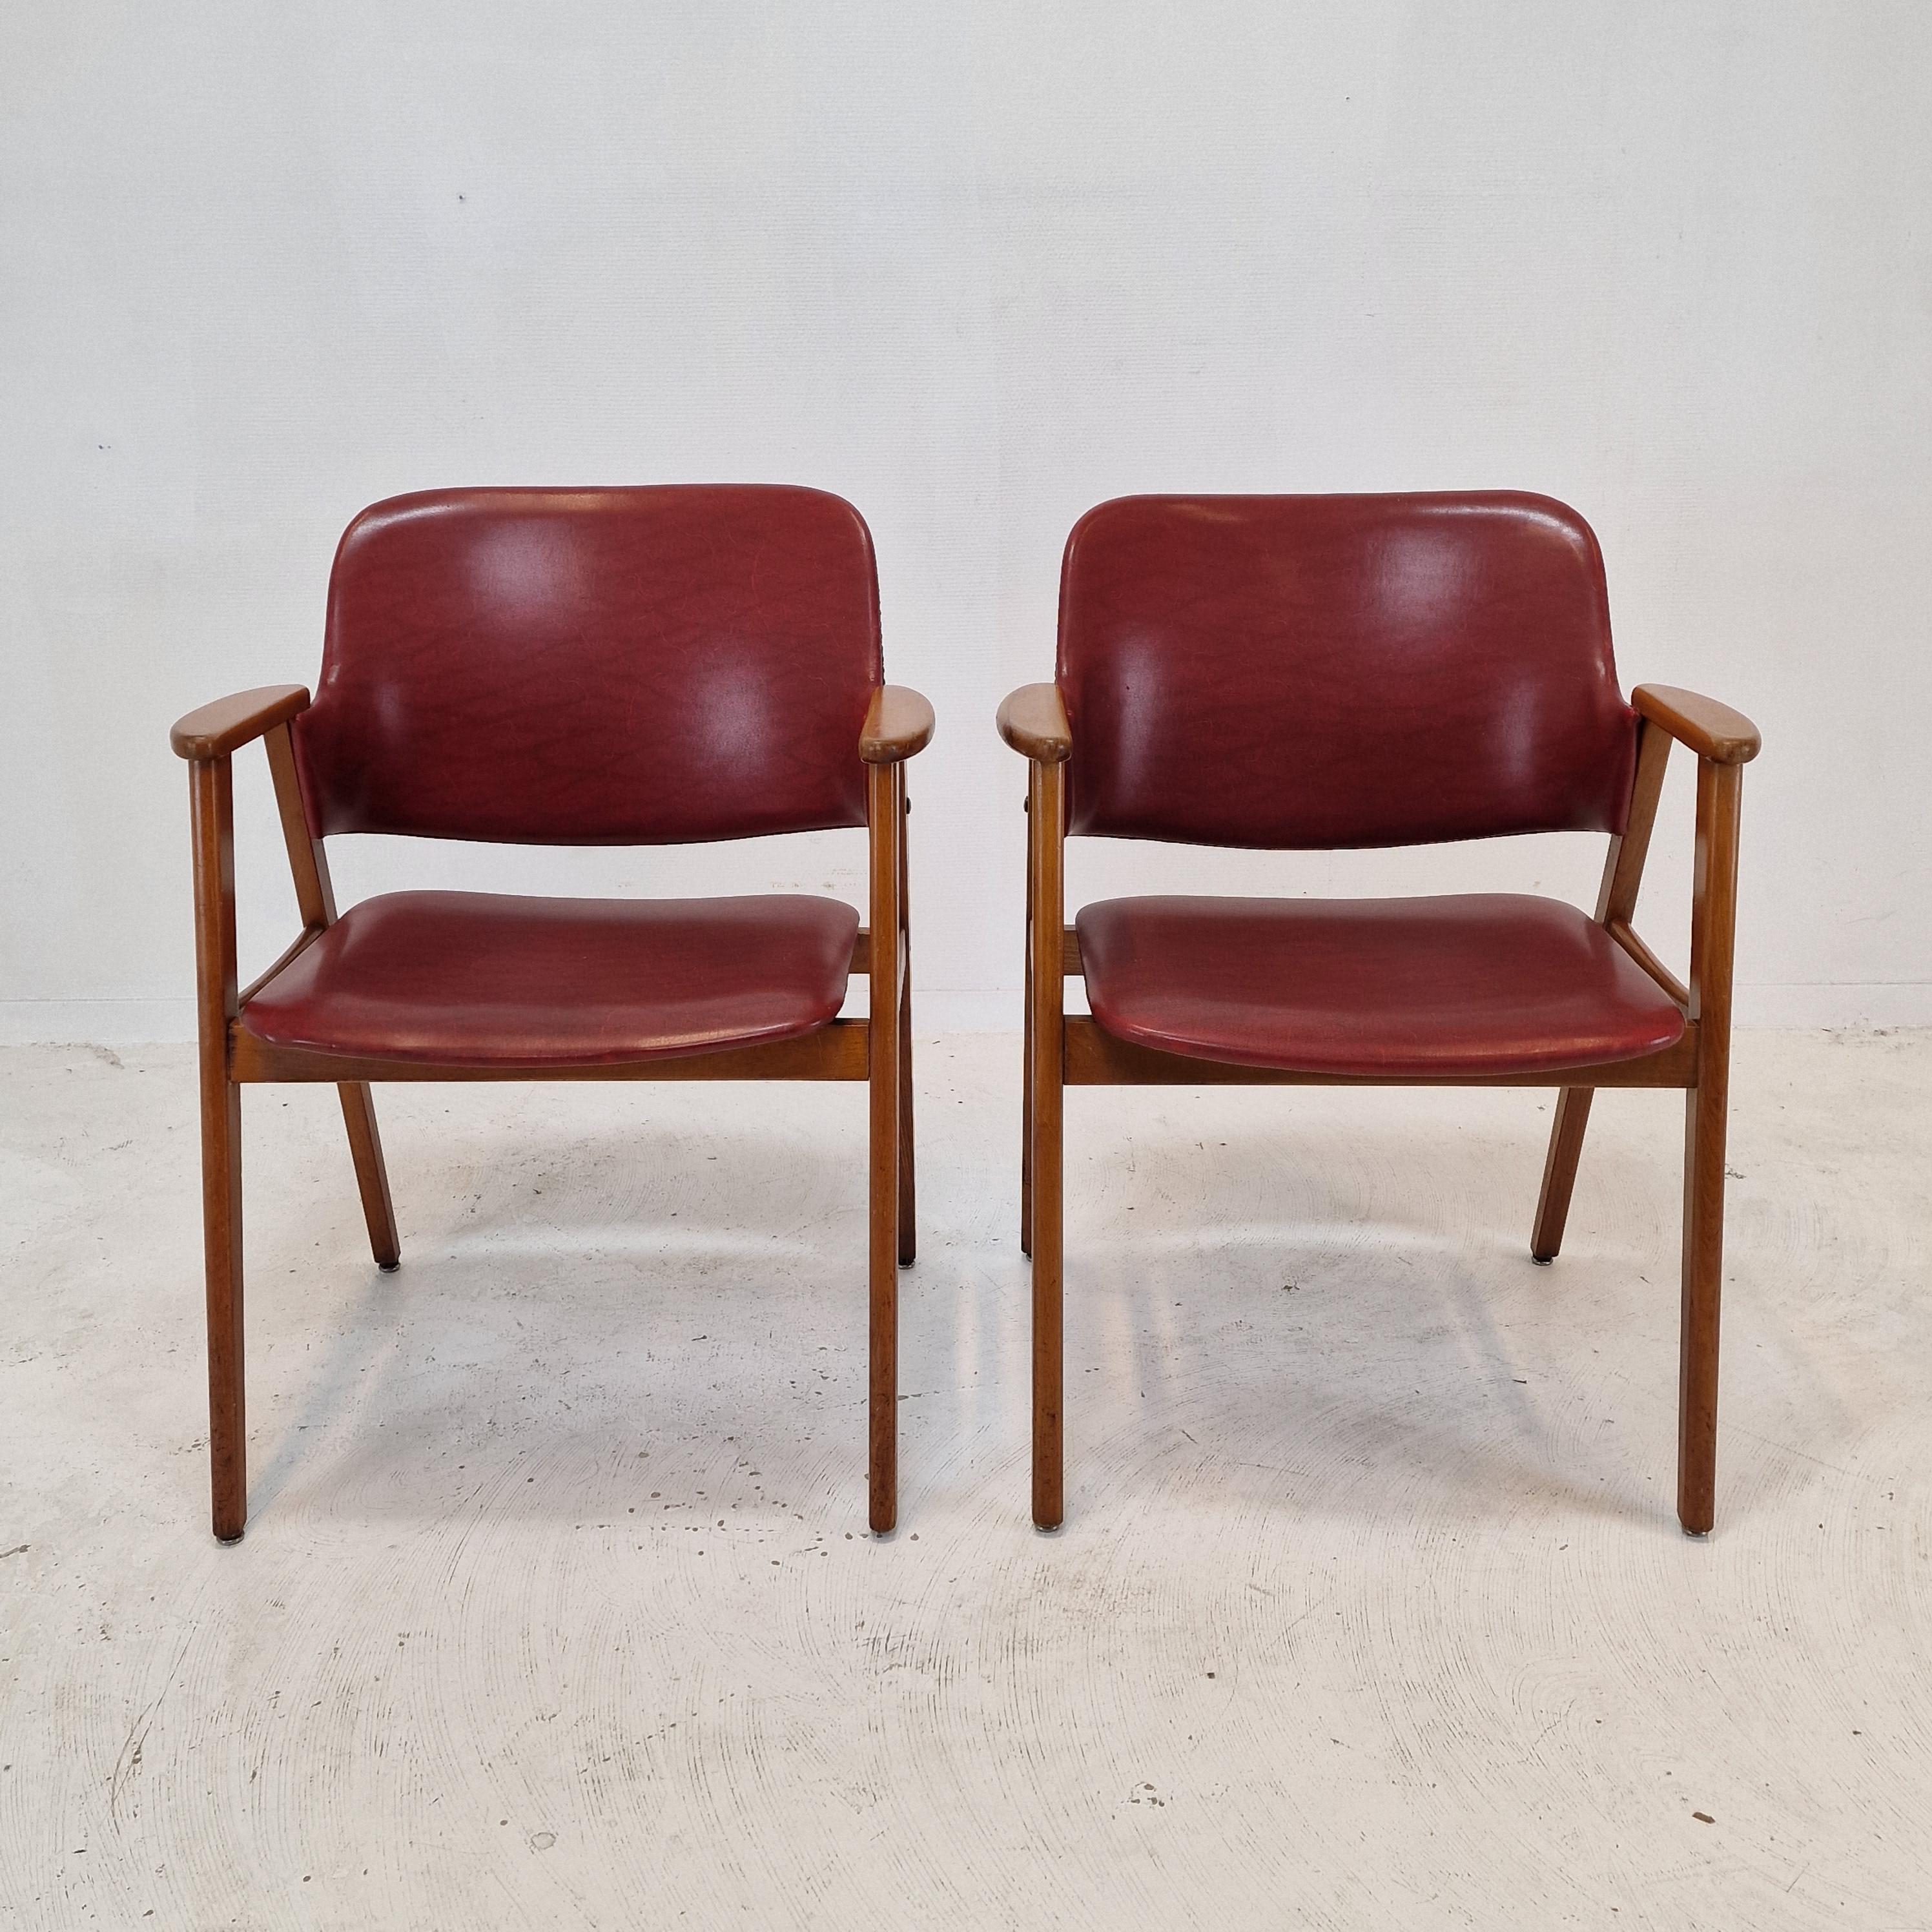 Cette chaise très confortable du milieu du siècle est conçue par Cees Braakman.
Il est fabriqué dans les années 50 par UMS Pastoe aux Pays-Bas. 
Elles peuvent être utilisées comme chaises de salle à manger ou chaises d'appoint.

Les pieds et les